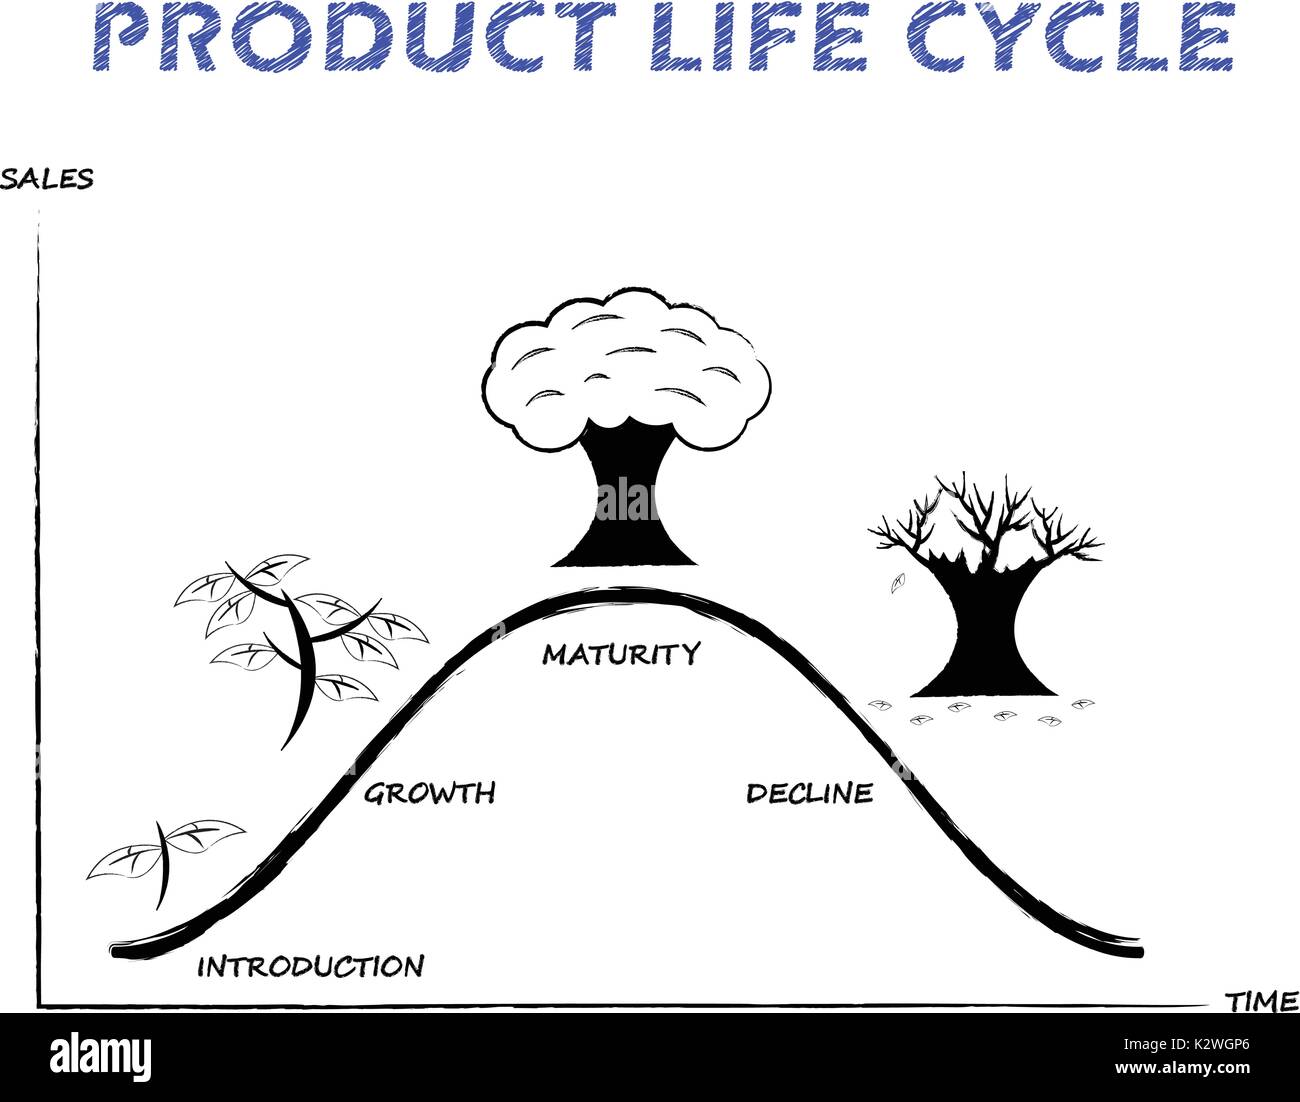 Noir & blanc, schéma du cycle de vie des produits est attiré par crayon sur fond blanc comme l'arboriculture quatre étapes, introduction, croissance, maturité, déclin. Illustration de Vecteur